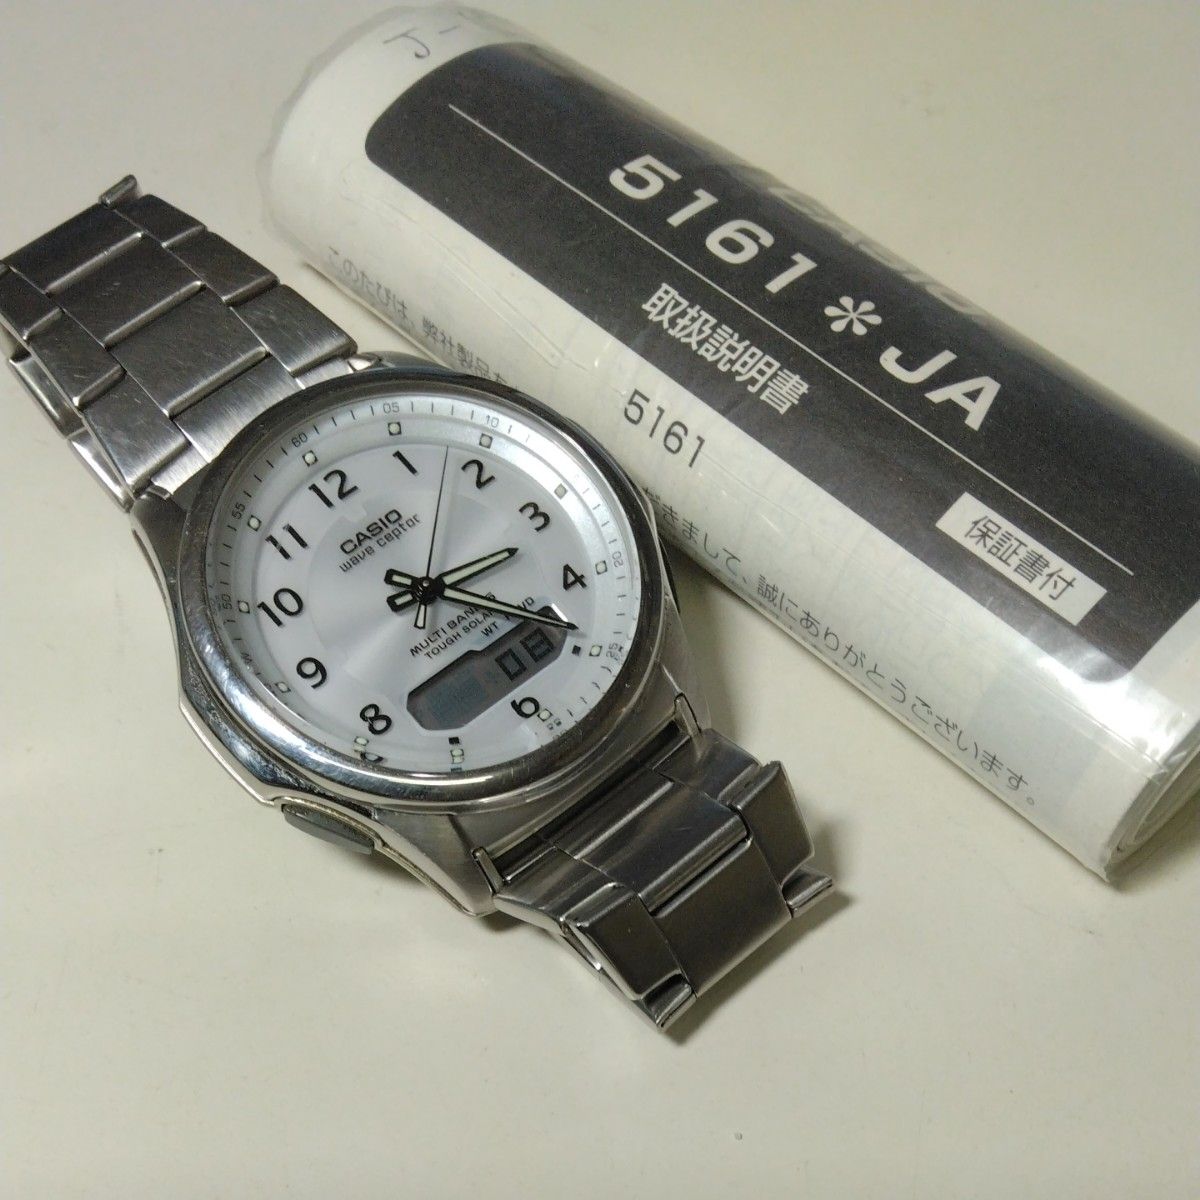 CASIO カシオ ウェーブセプター タフソーラー 電波腕時計 WVA-M630-7AJF マルチバンド6